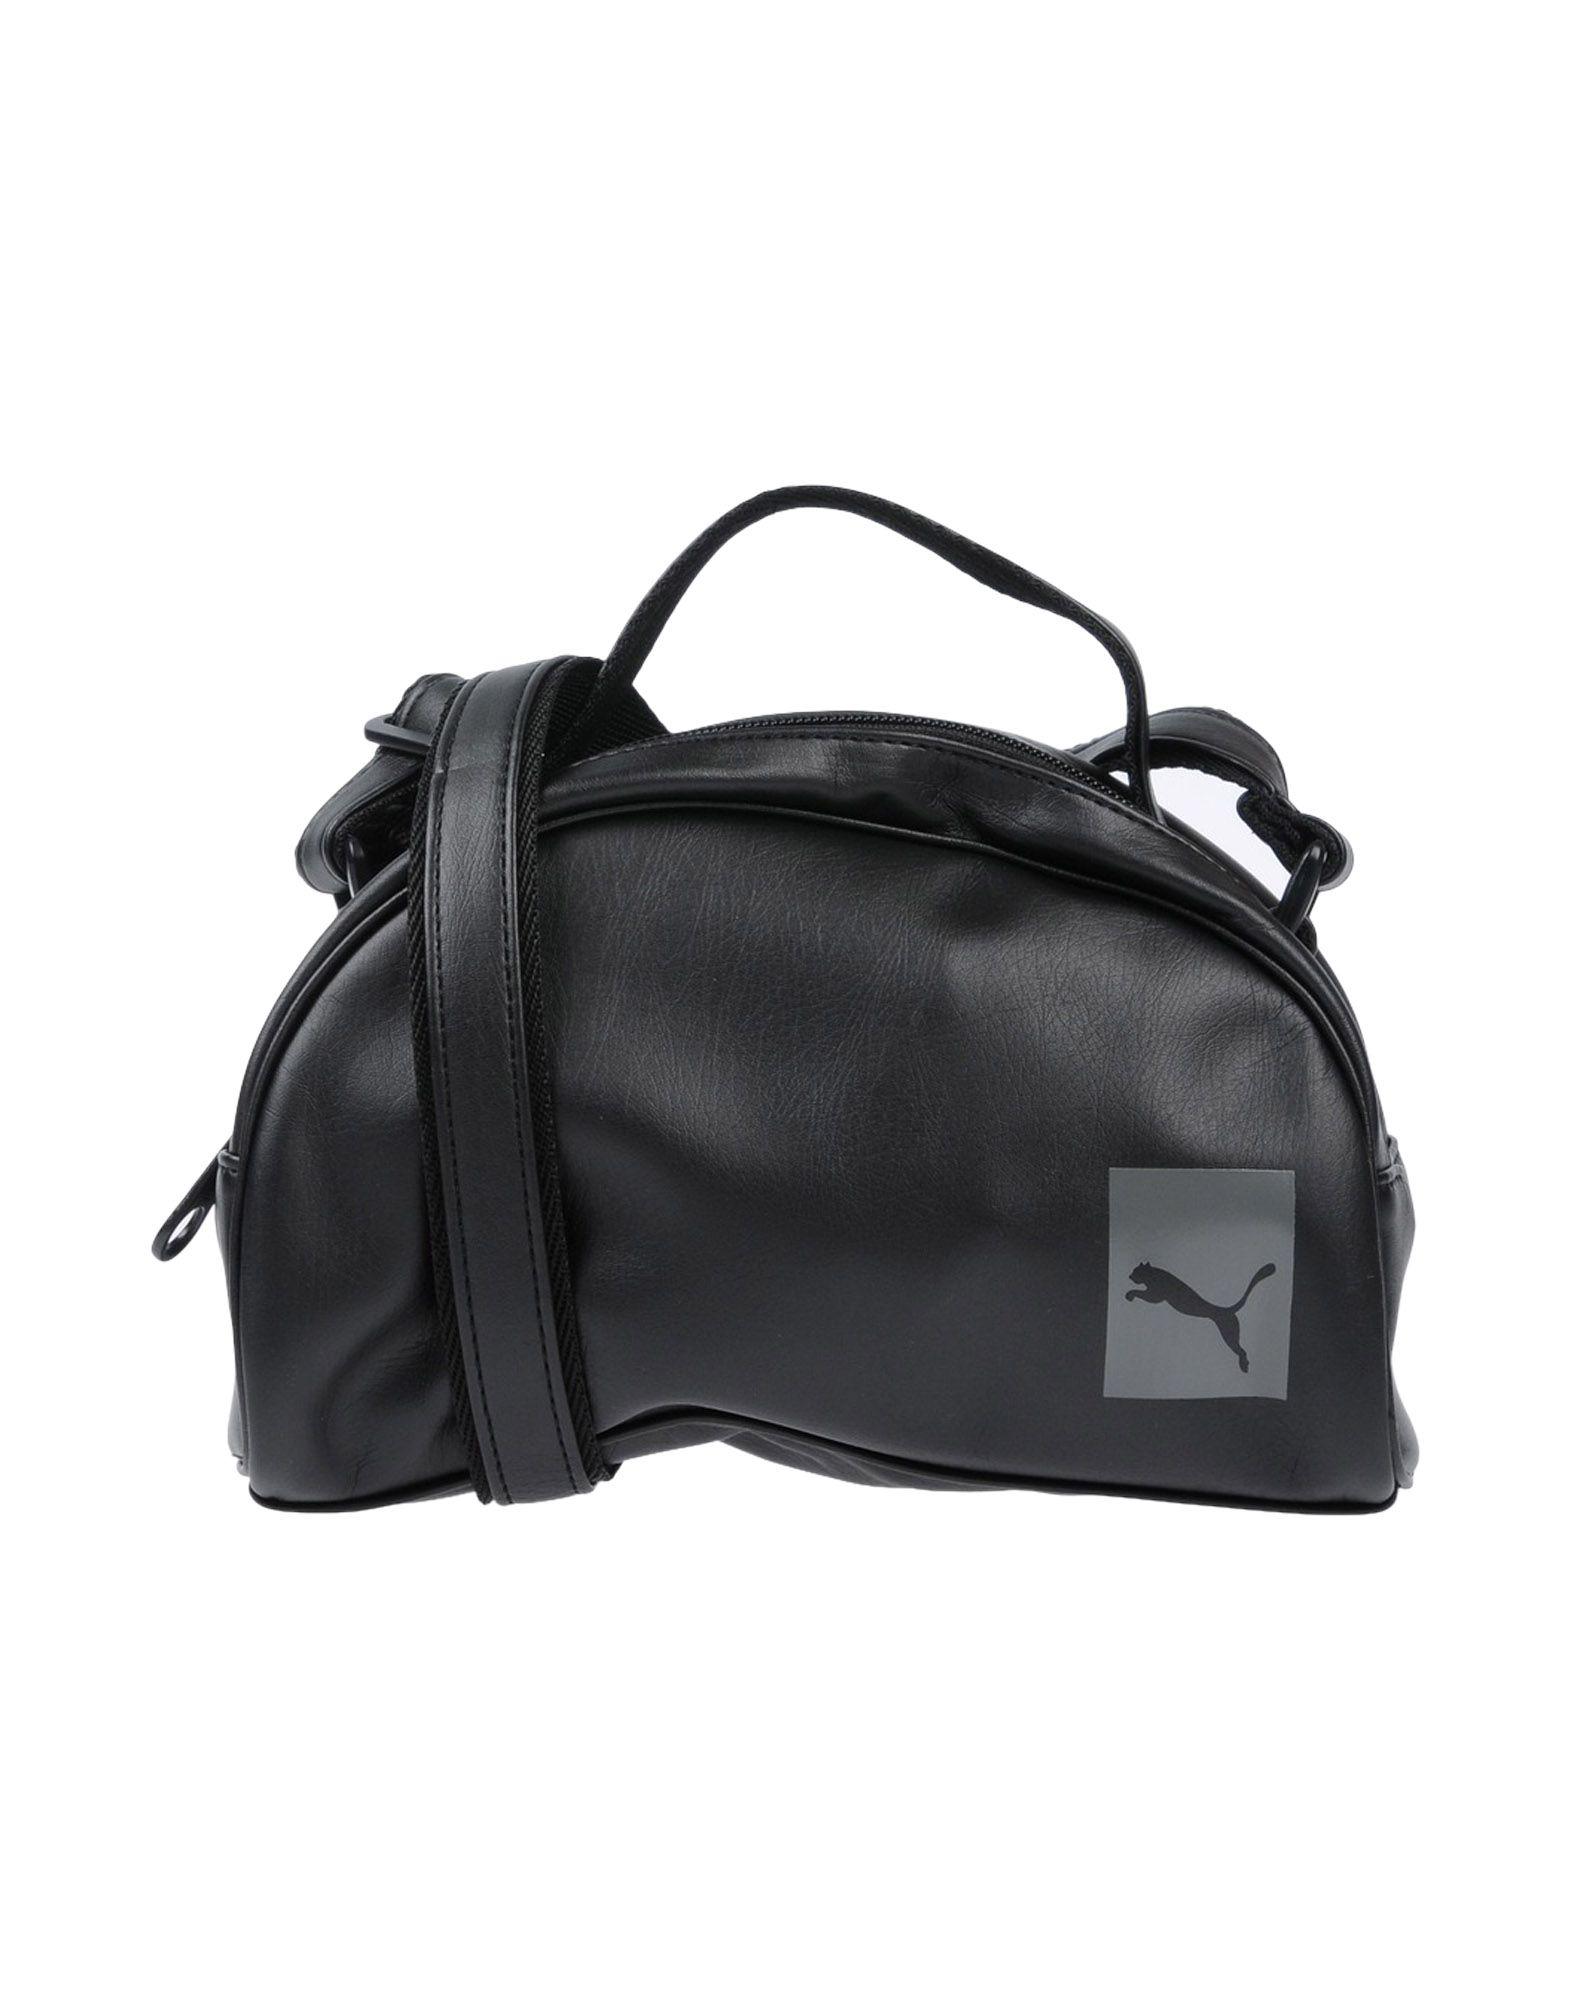 puma handbags for sale